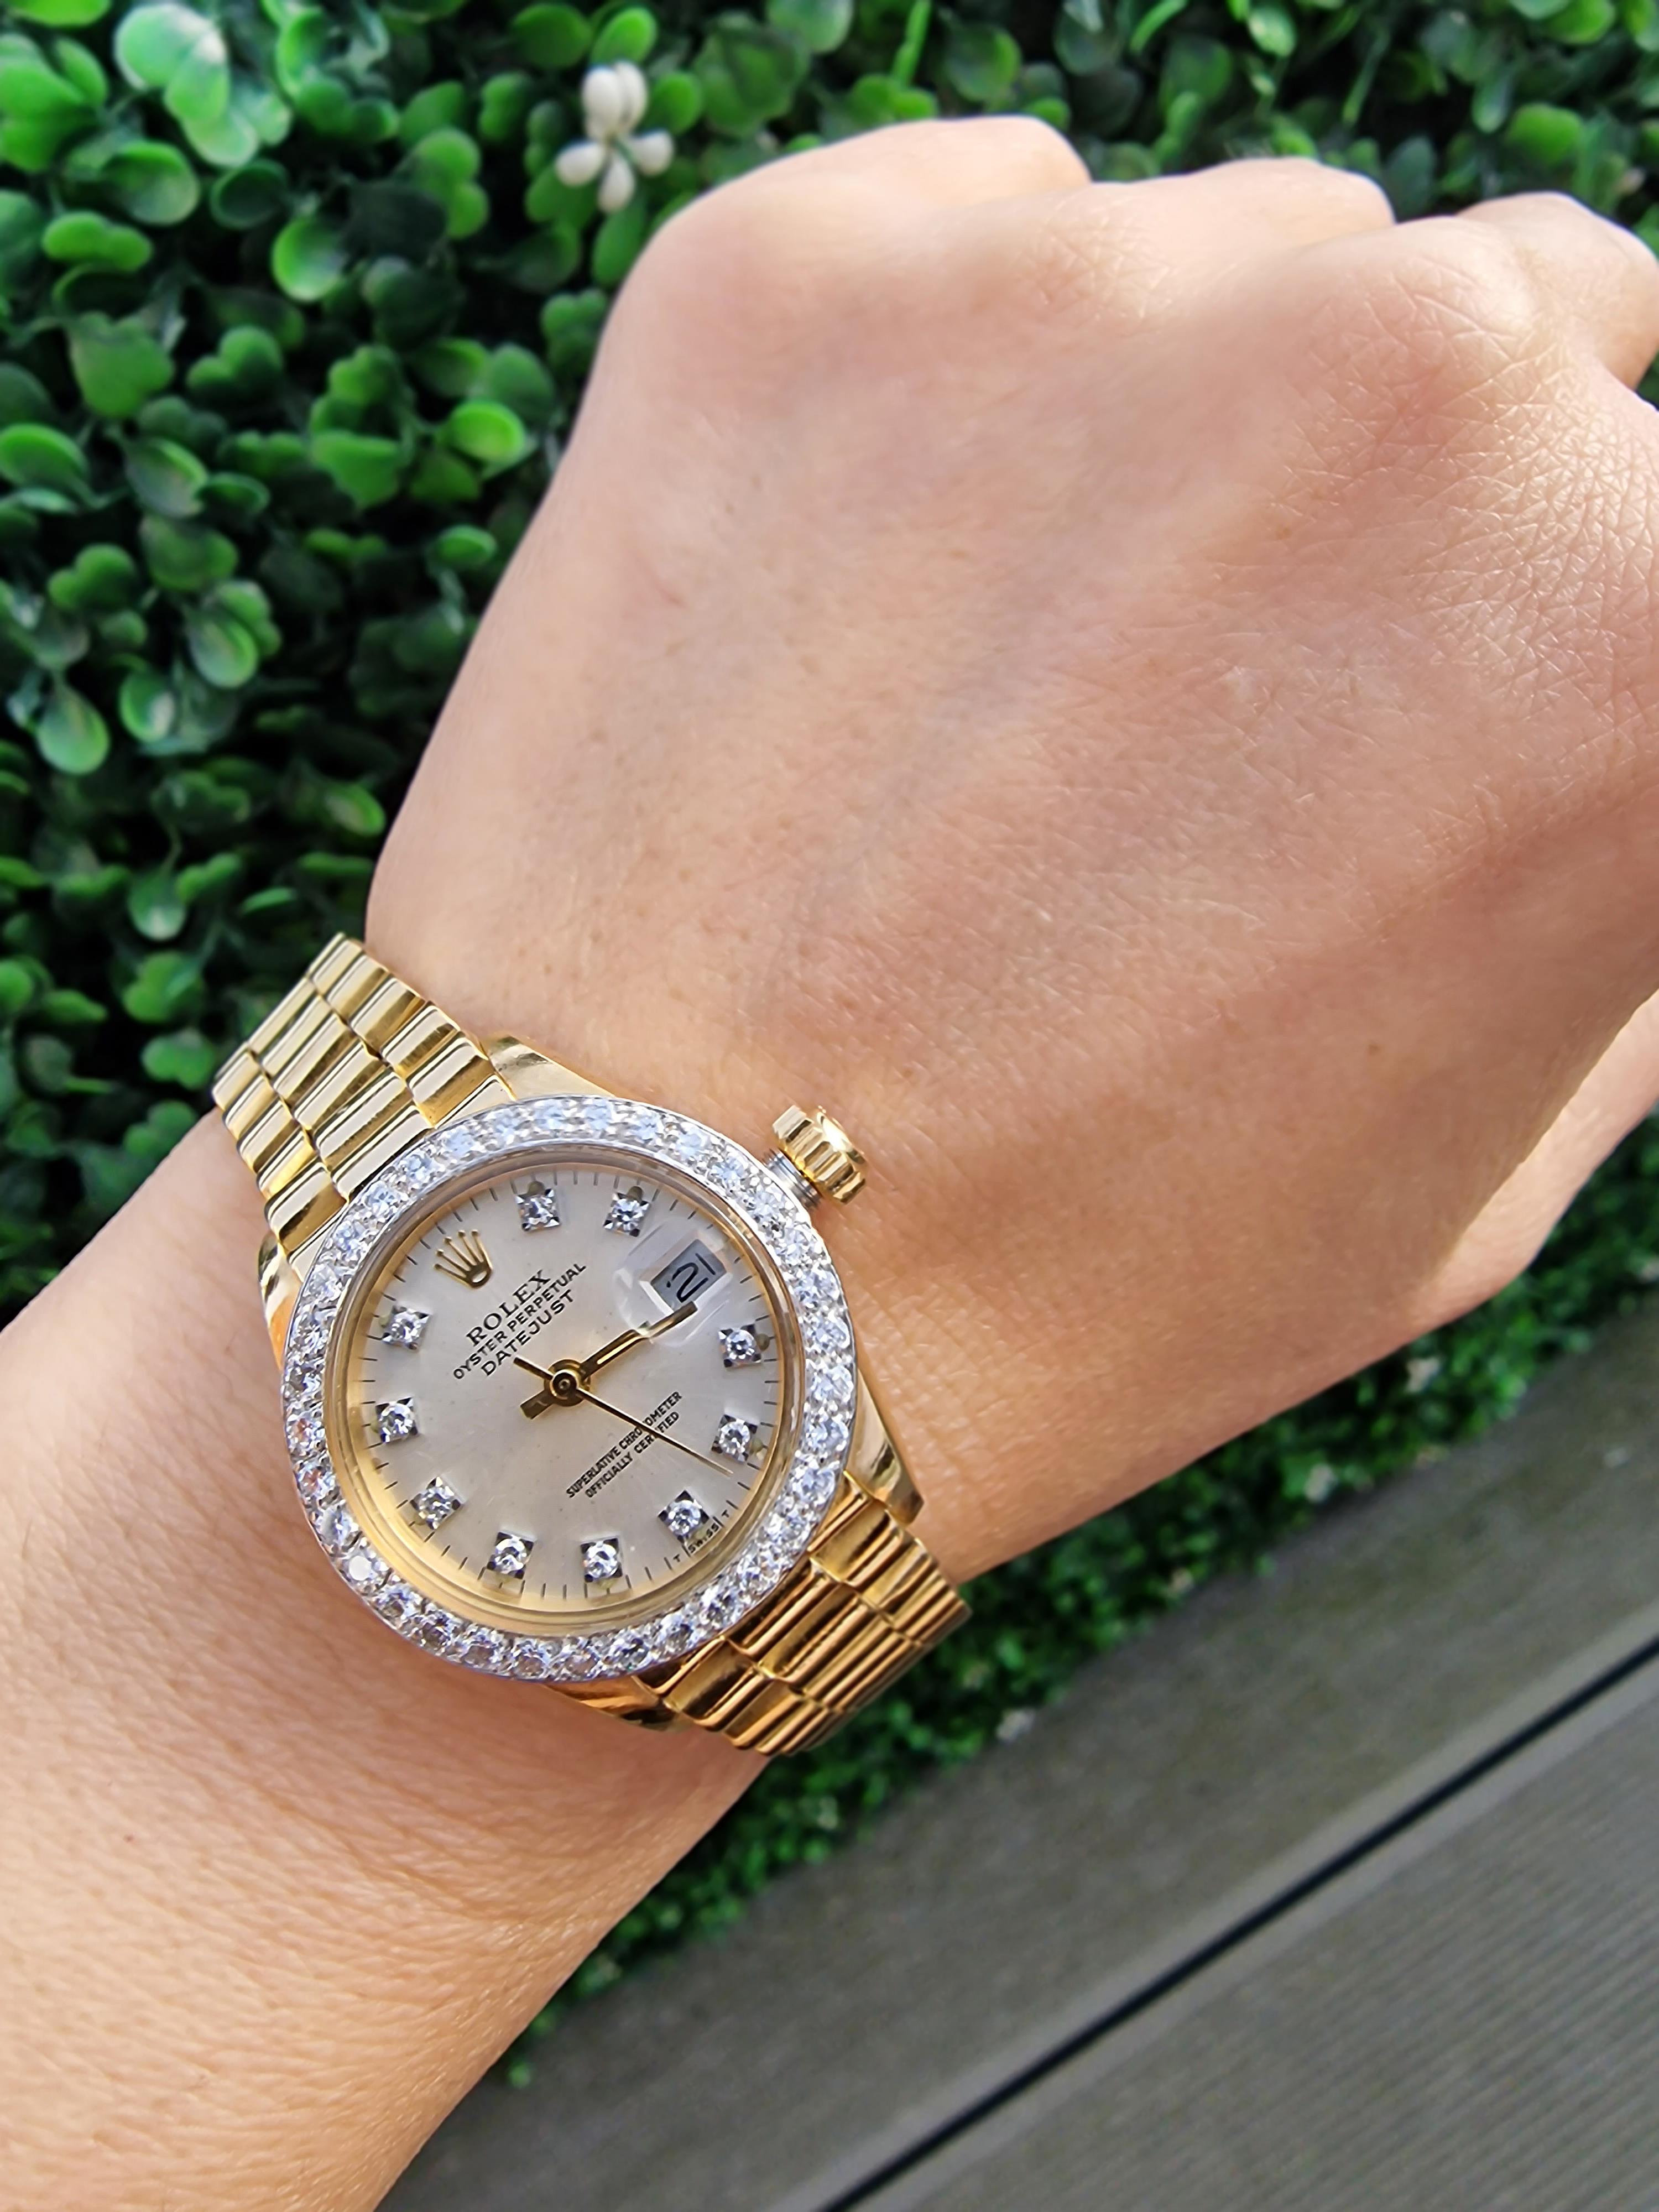 Sammlerstück Vintage 1979 Rolex Datejust Damenuhr in 18ct Gelbgold mit nachgesetzter Diamantlünette.
Die Uhr wurde kürzlich vor dem Hochladen gewartet und ist voll funktionsfähig.

Länge des Armbands: 17 cm

Genießen Sie die luxuriöse Präzision des